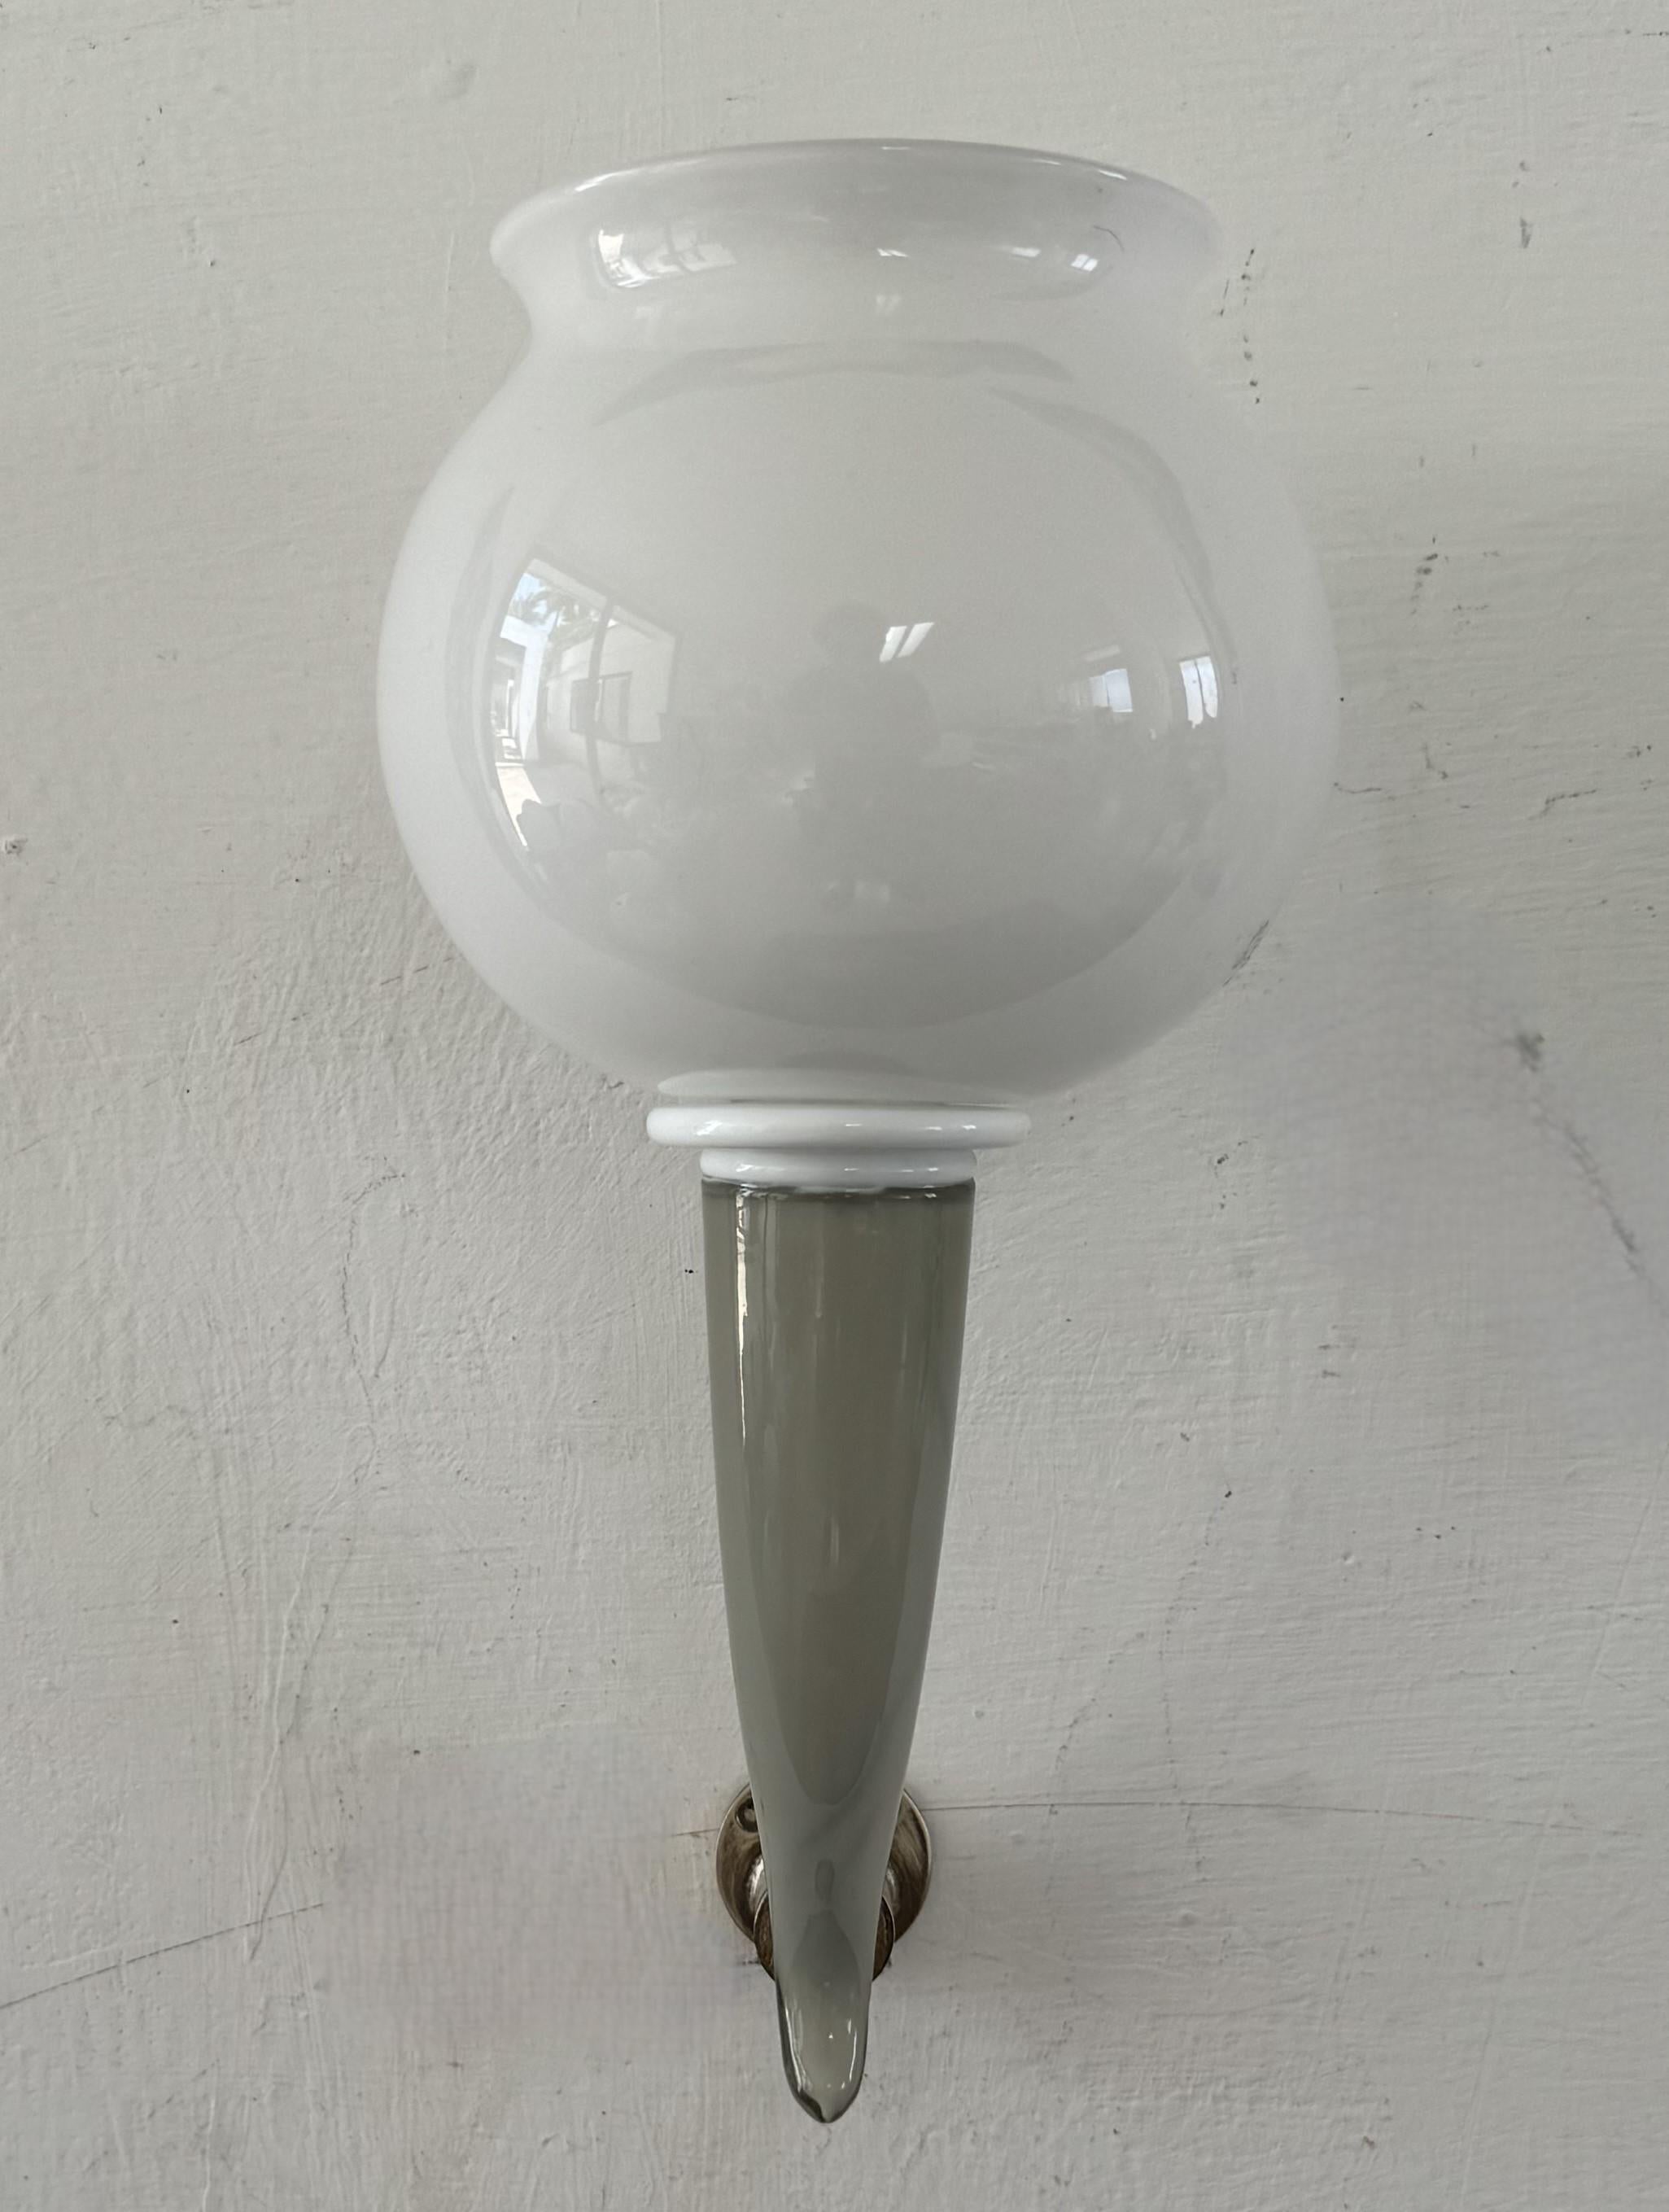 Petite applique à une lumière en  verre de Murano gris pastel et blanc.
Il s'agit d'une lampe très difficile à trouver, fabriquée par Venini d'après les dessins de Gio Ponti.
Cette applique contient une ampoule e14.
Un seul disponible